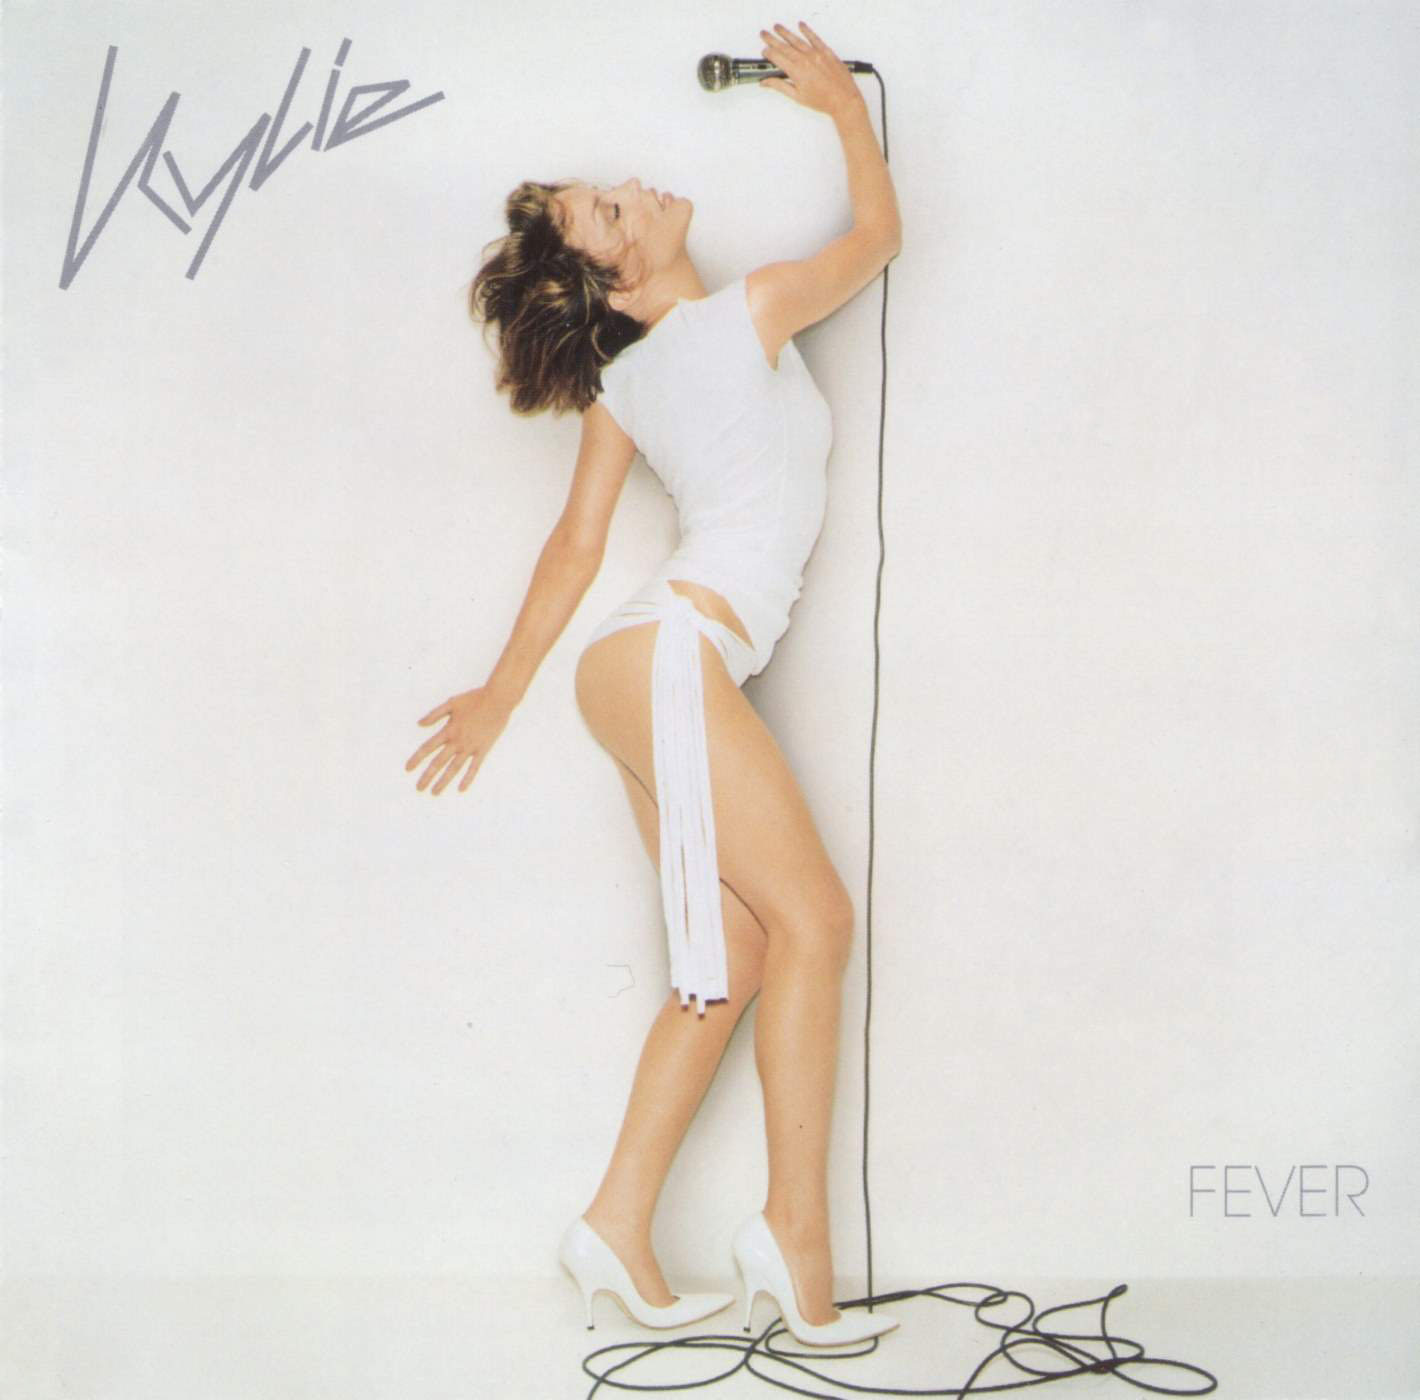 http://1.bp.blogspot.com/_7cUy-SCRIWw/TNmnQlgD_hI/AAAAAAAABCU/vB242hbjH08/s1600/Kylie_Minogue-Fever-Frontal.jpg